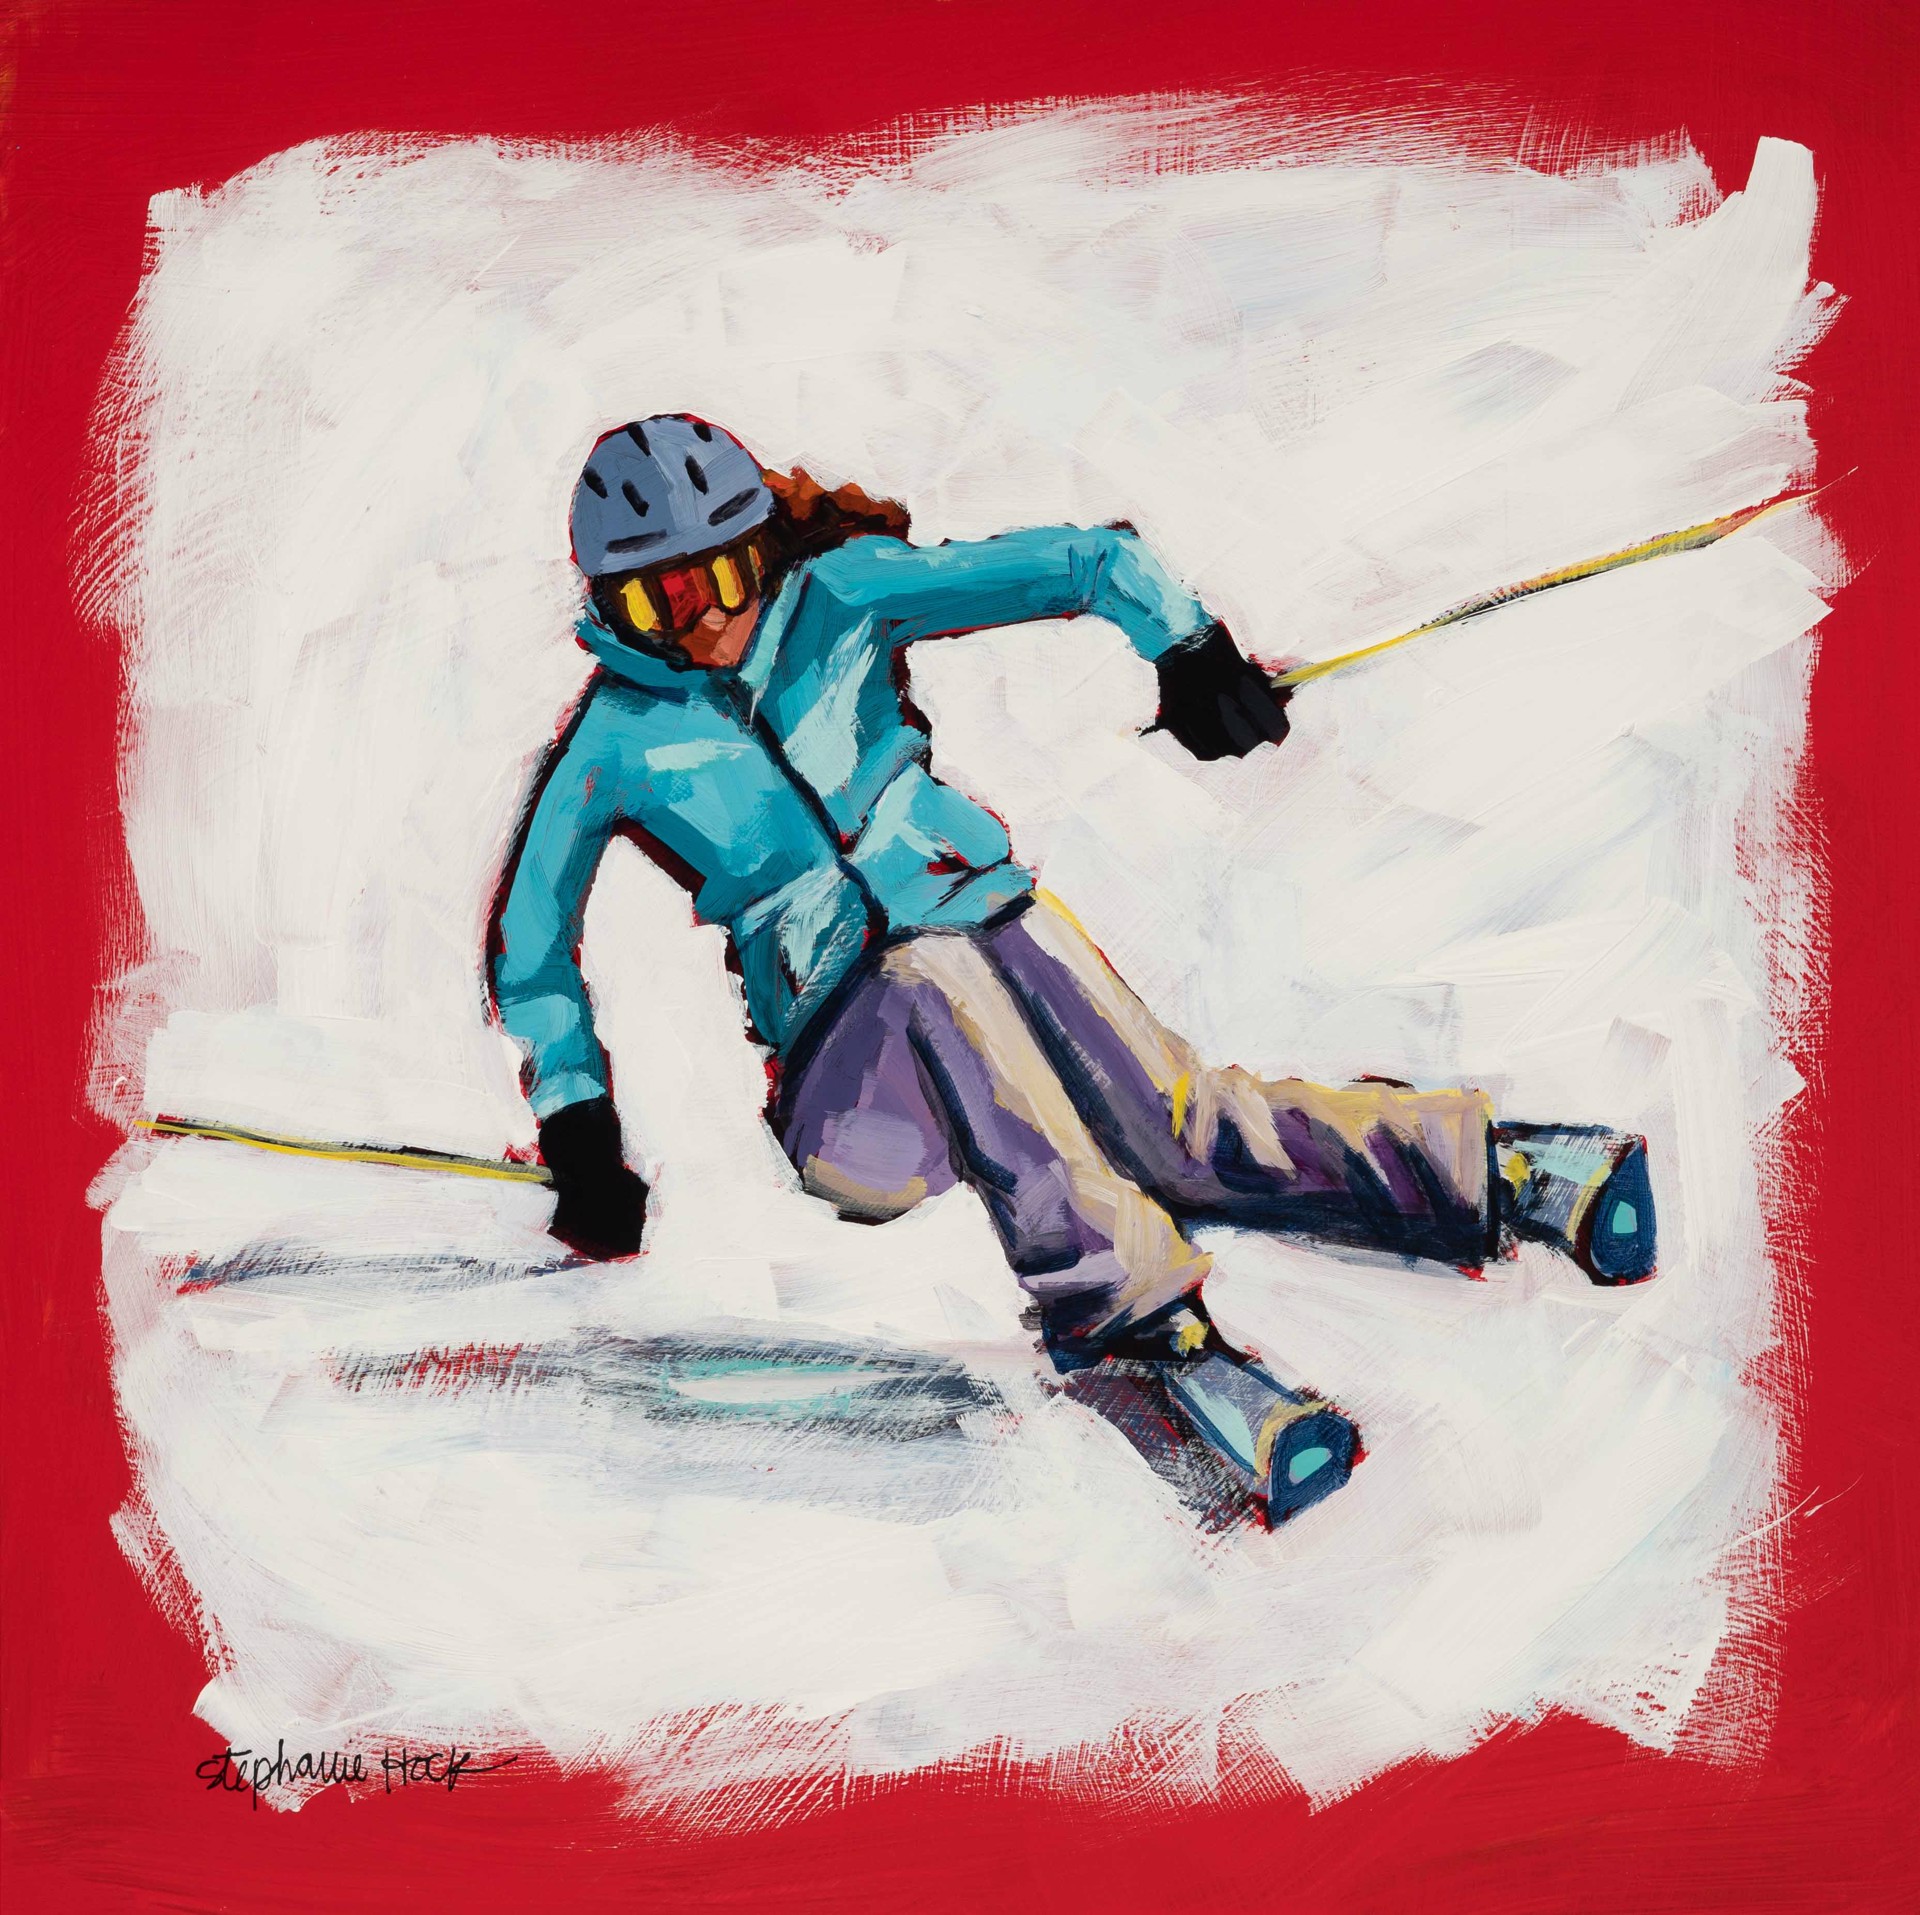 Red Skier by Stephanie Hock